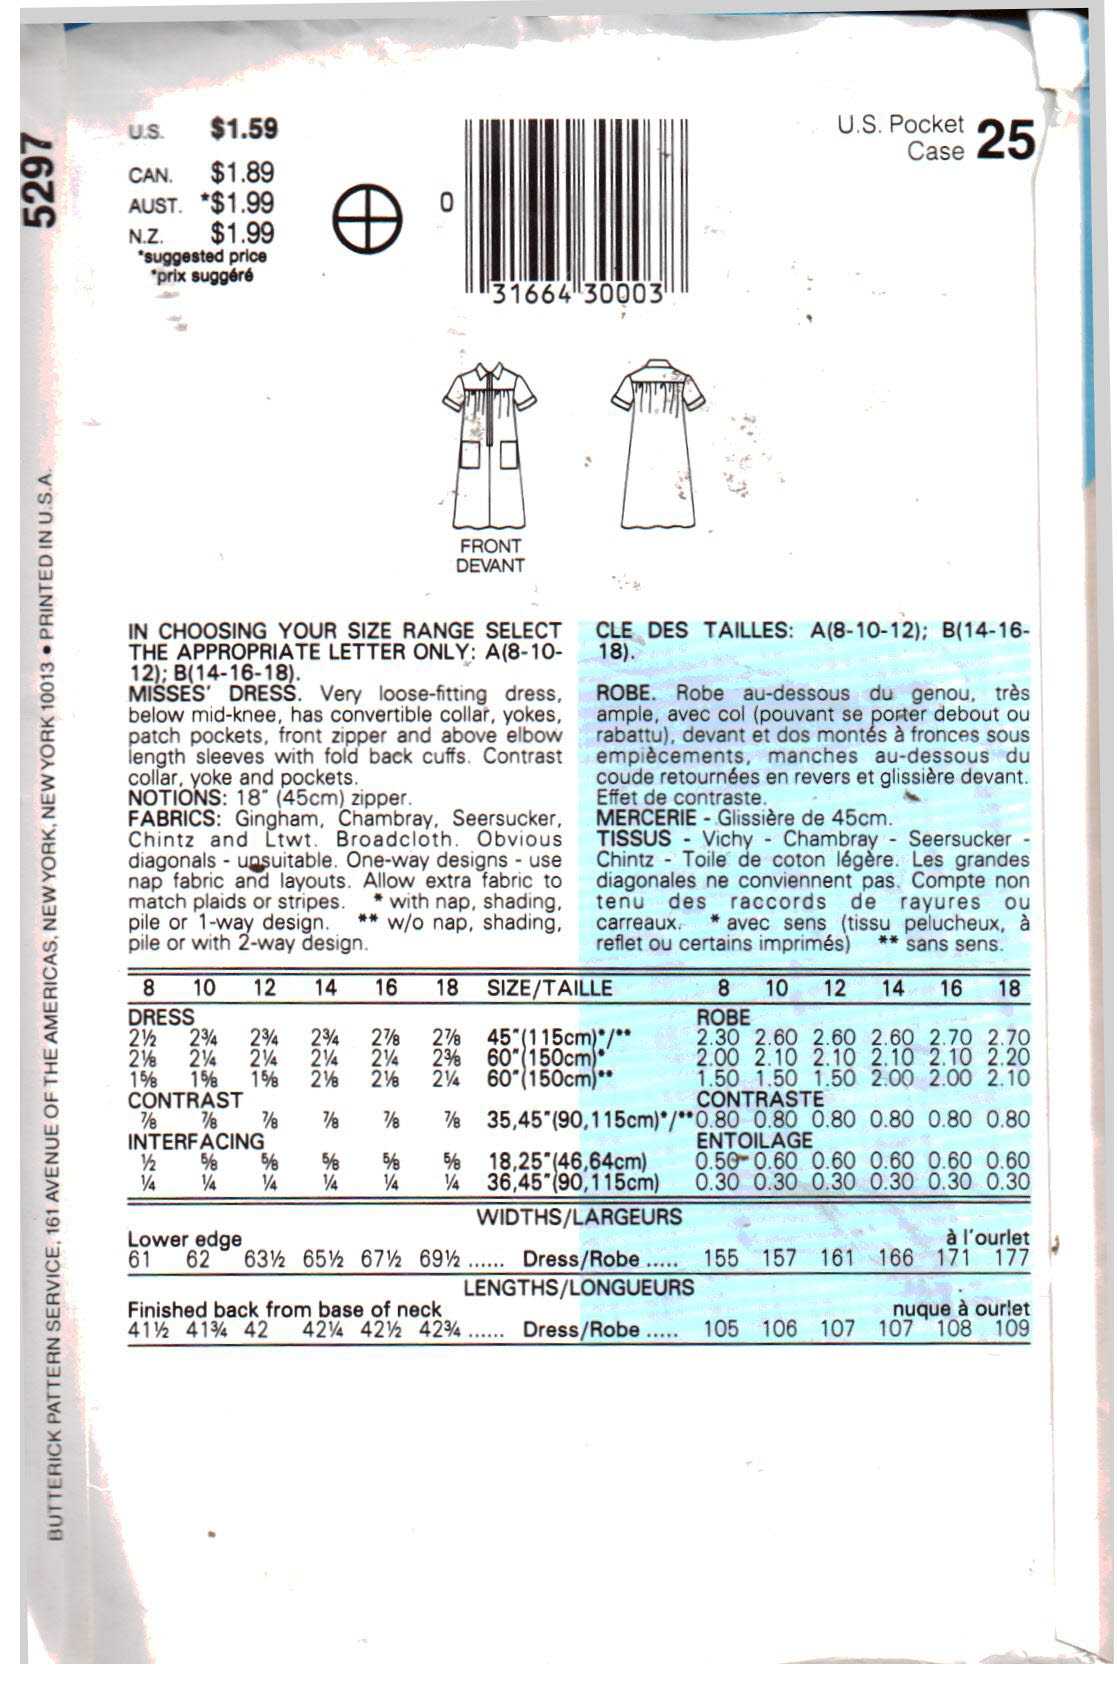 Butterick 5297 Dress Size: A 8-10-12 Uncut Sewing Pattern